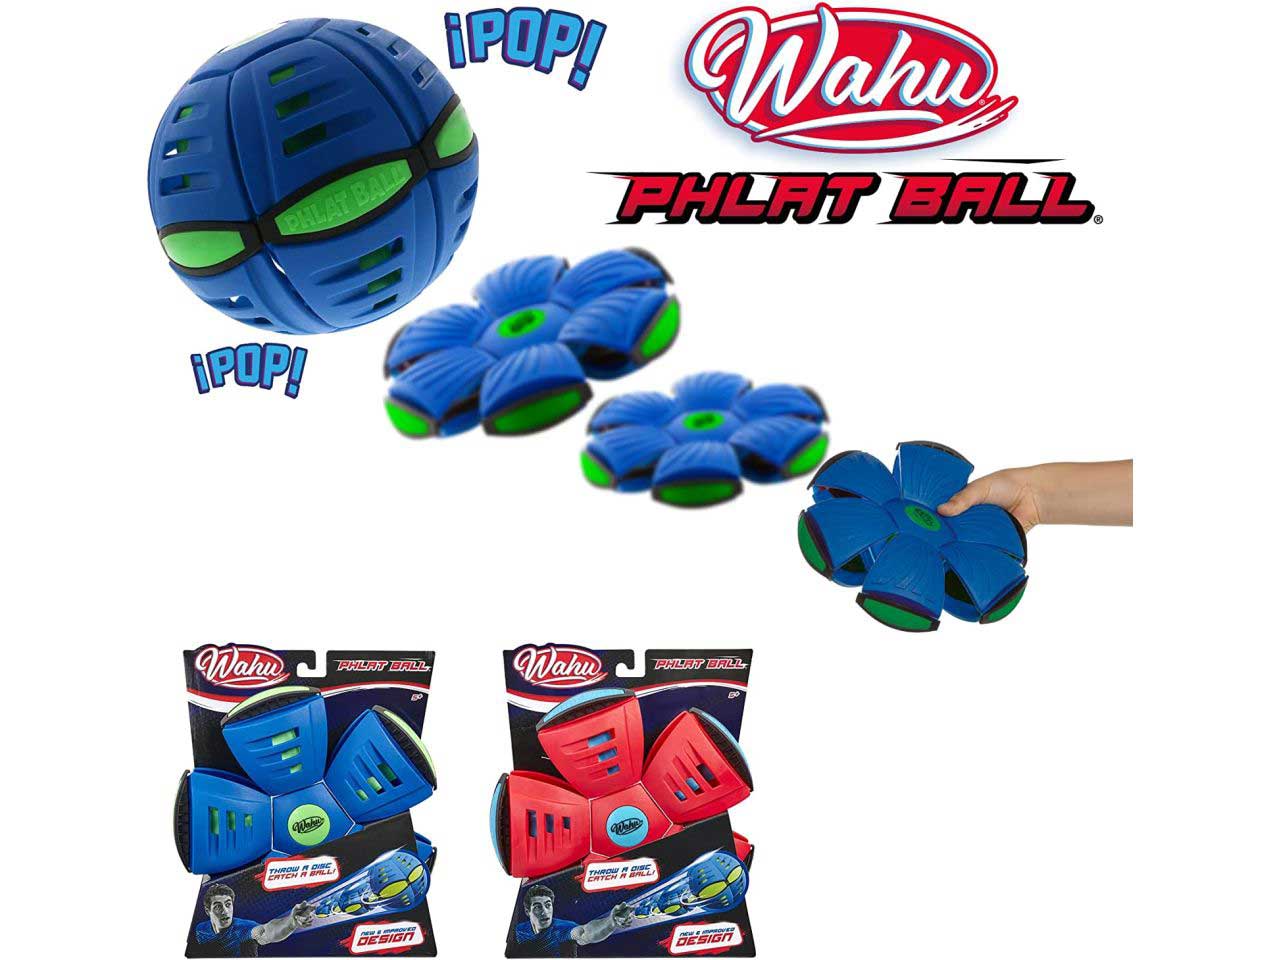 Wahu phlat ball classic